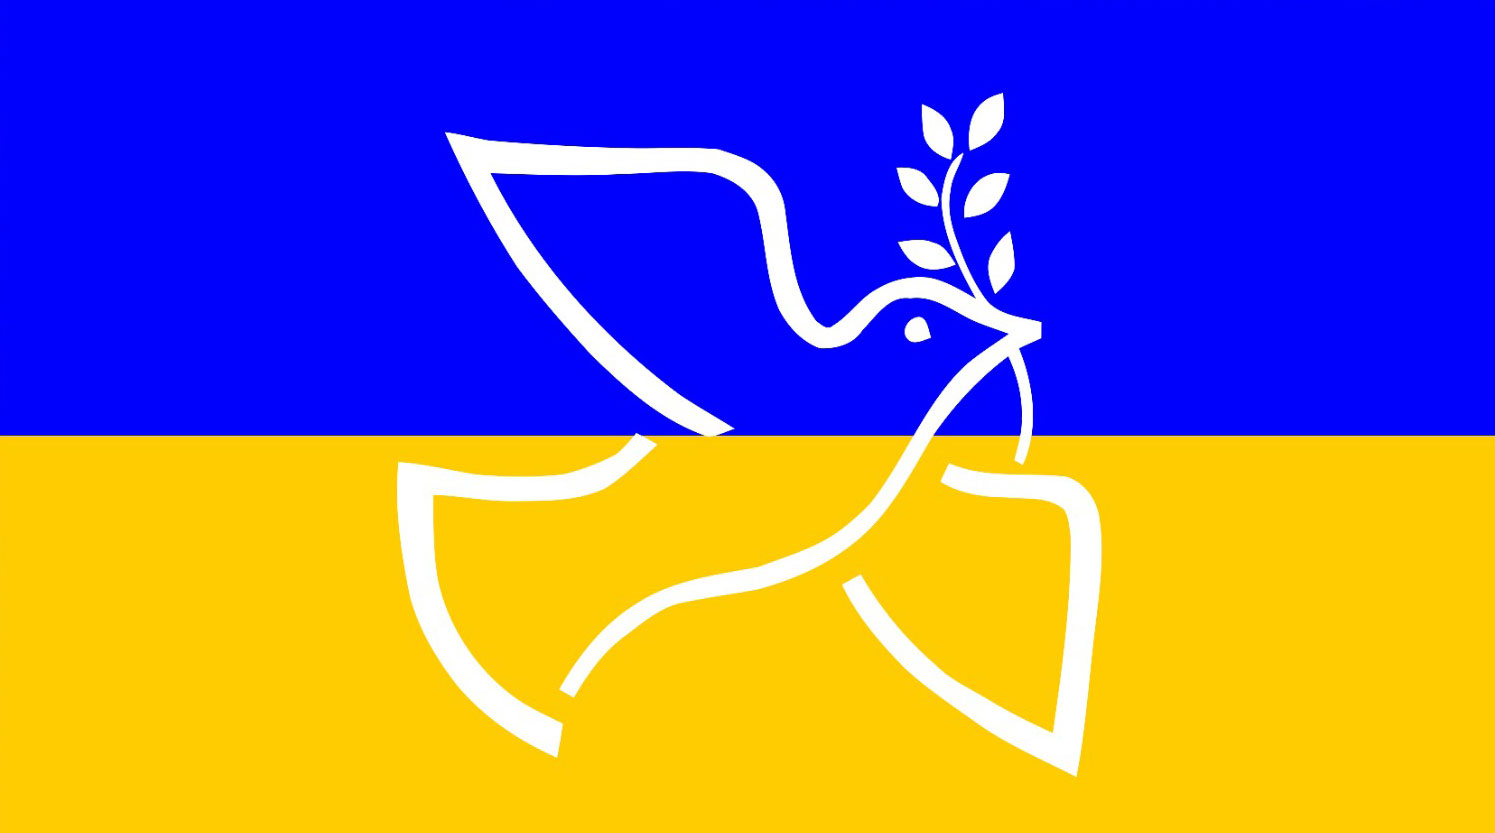 Unterstützung für die Ukraine